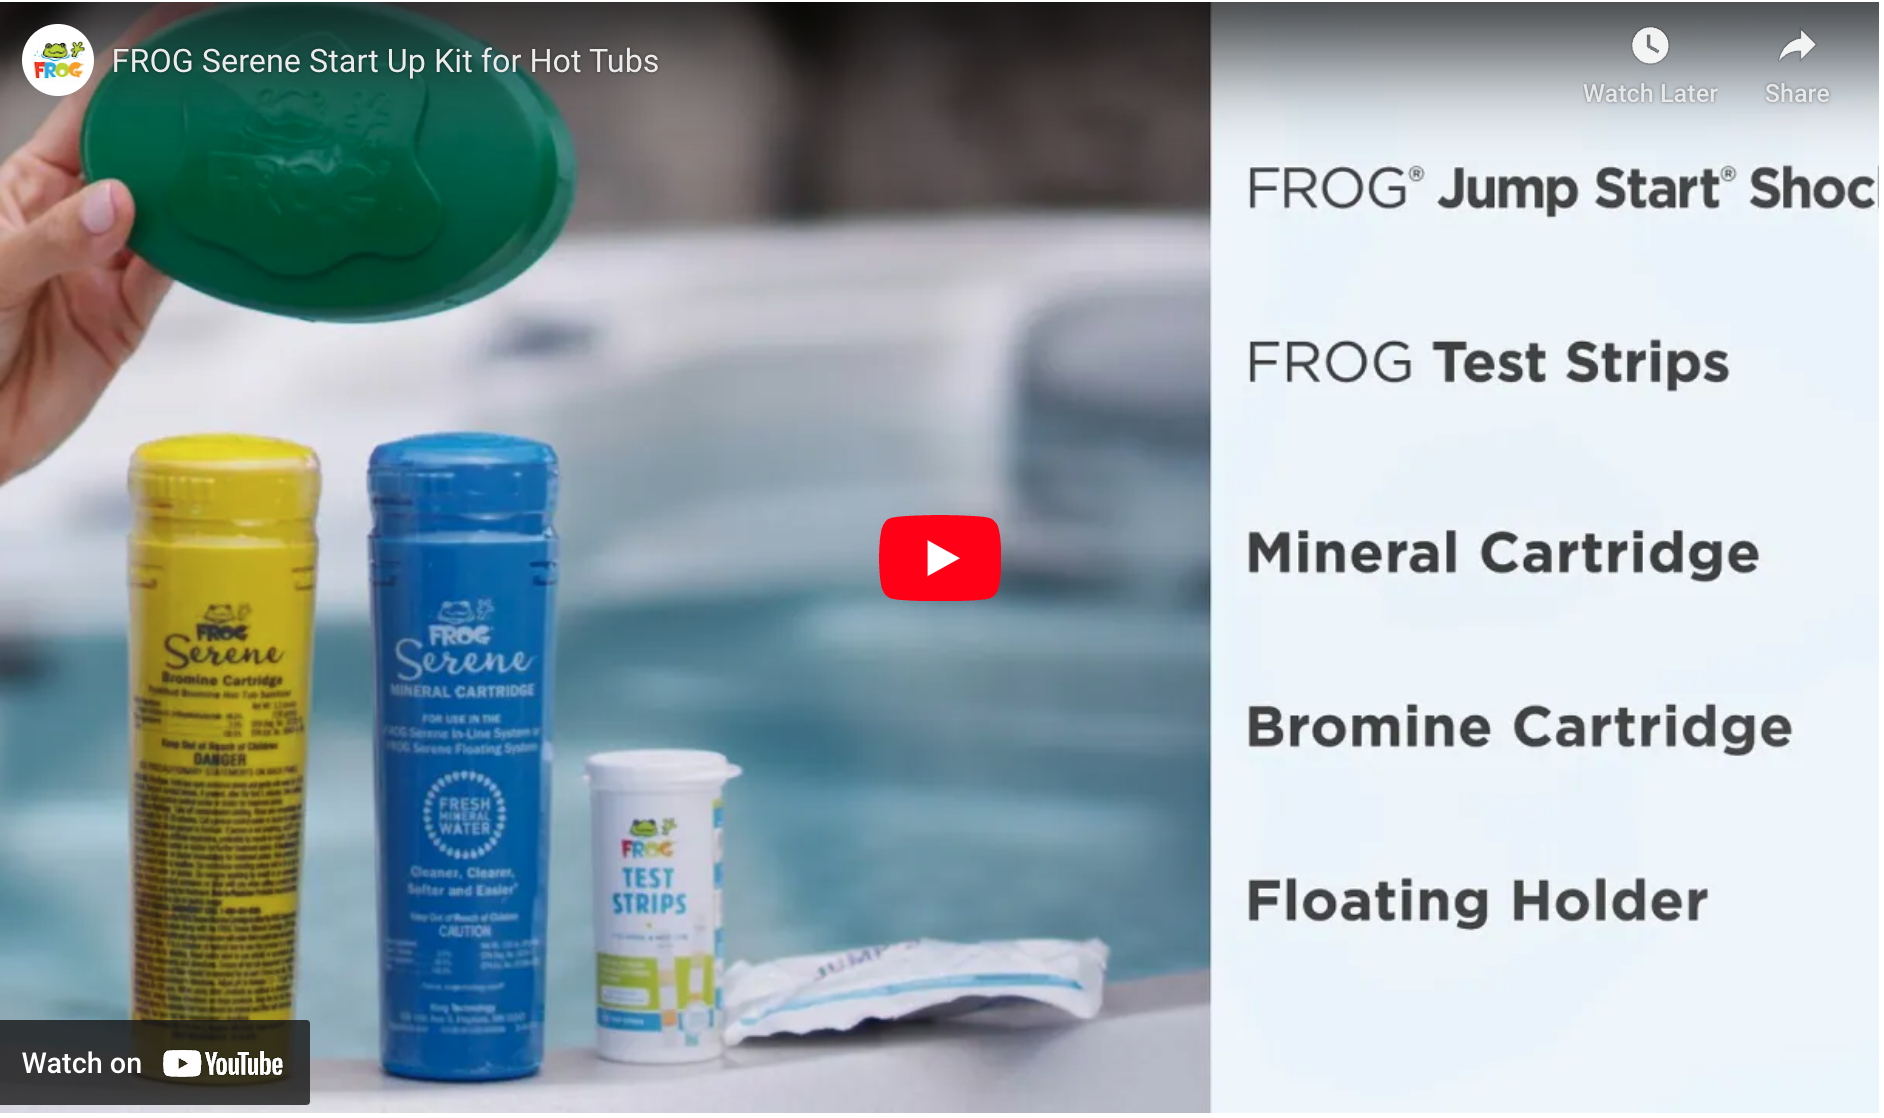 FROG Serene Start Up Kit for Hot Tubs